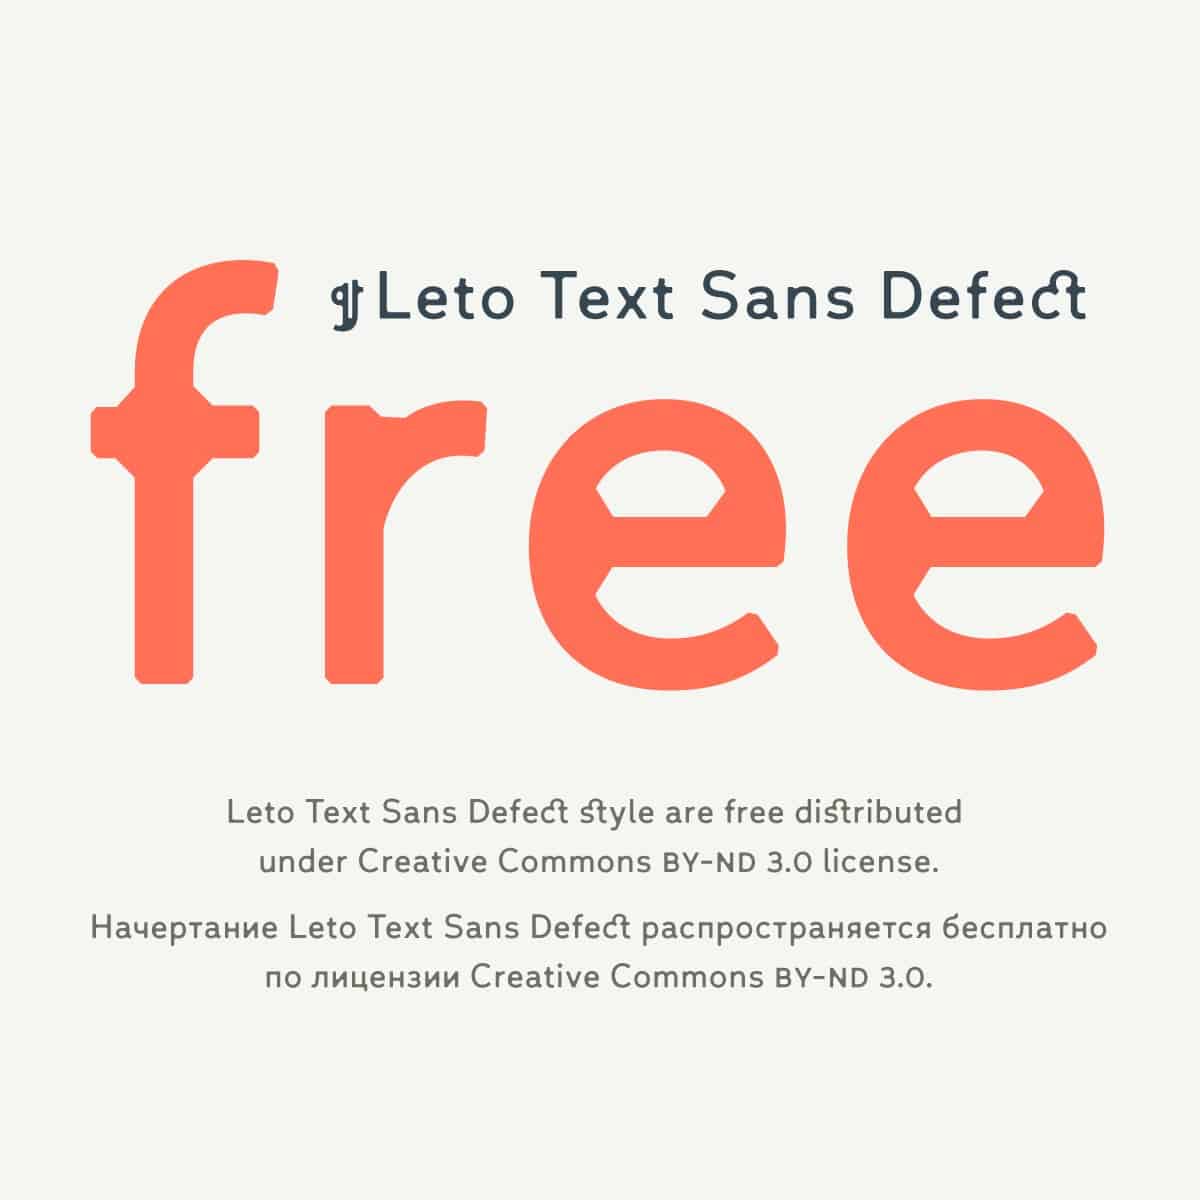 Font Leto Text Sana